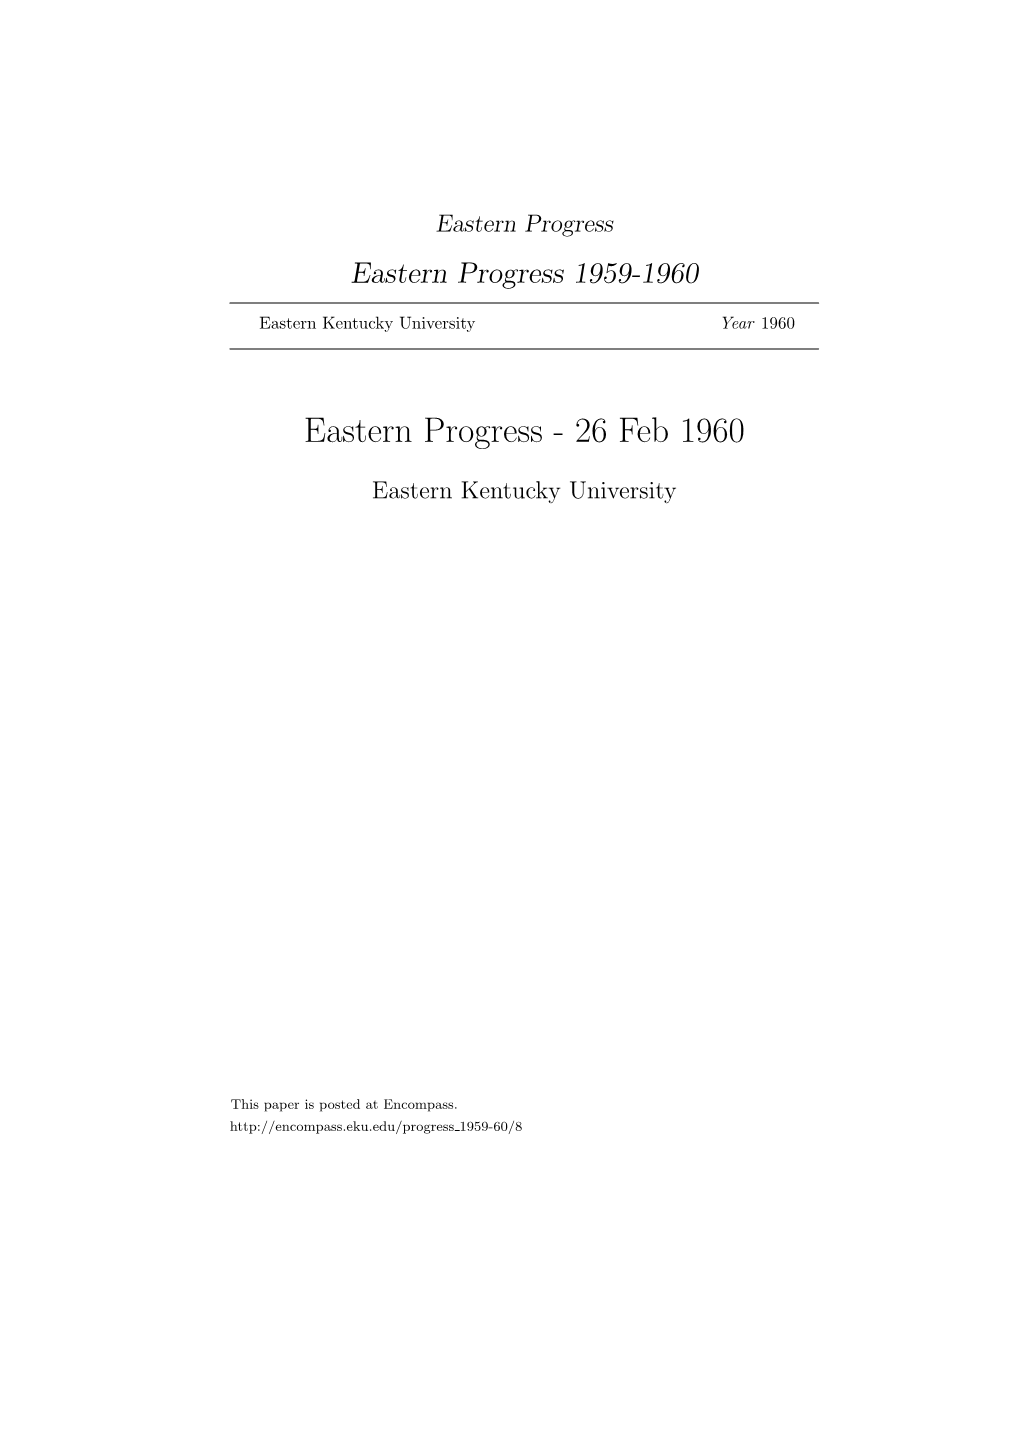 Eastern Progress Eastern Progress 1959-1960